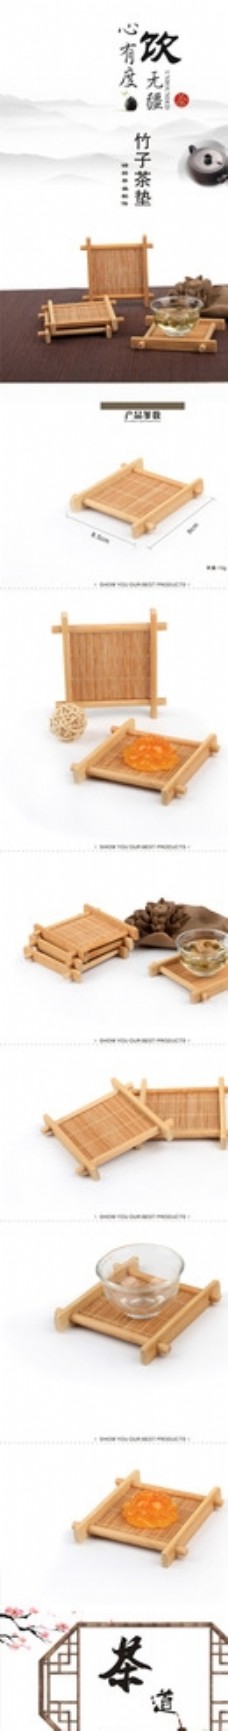 竹制品 茶垫